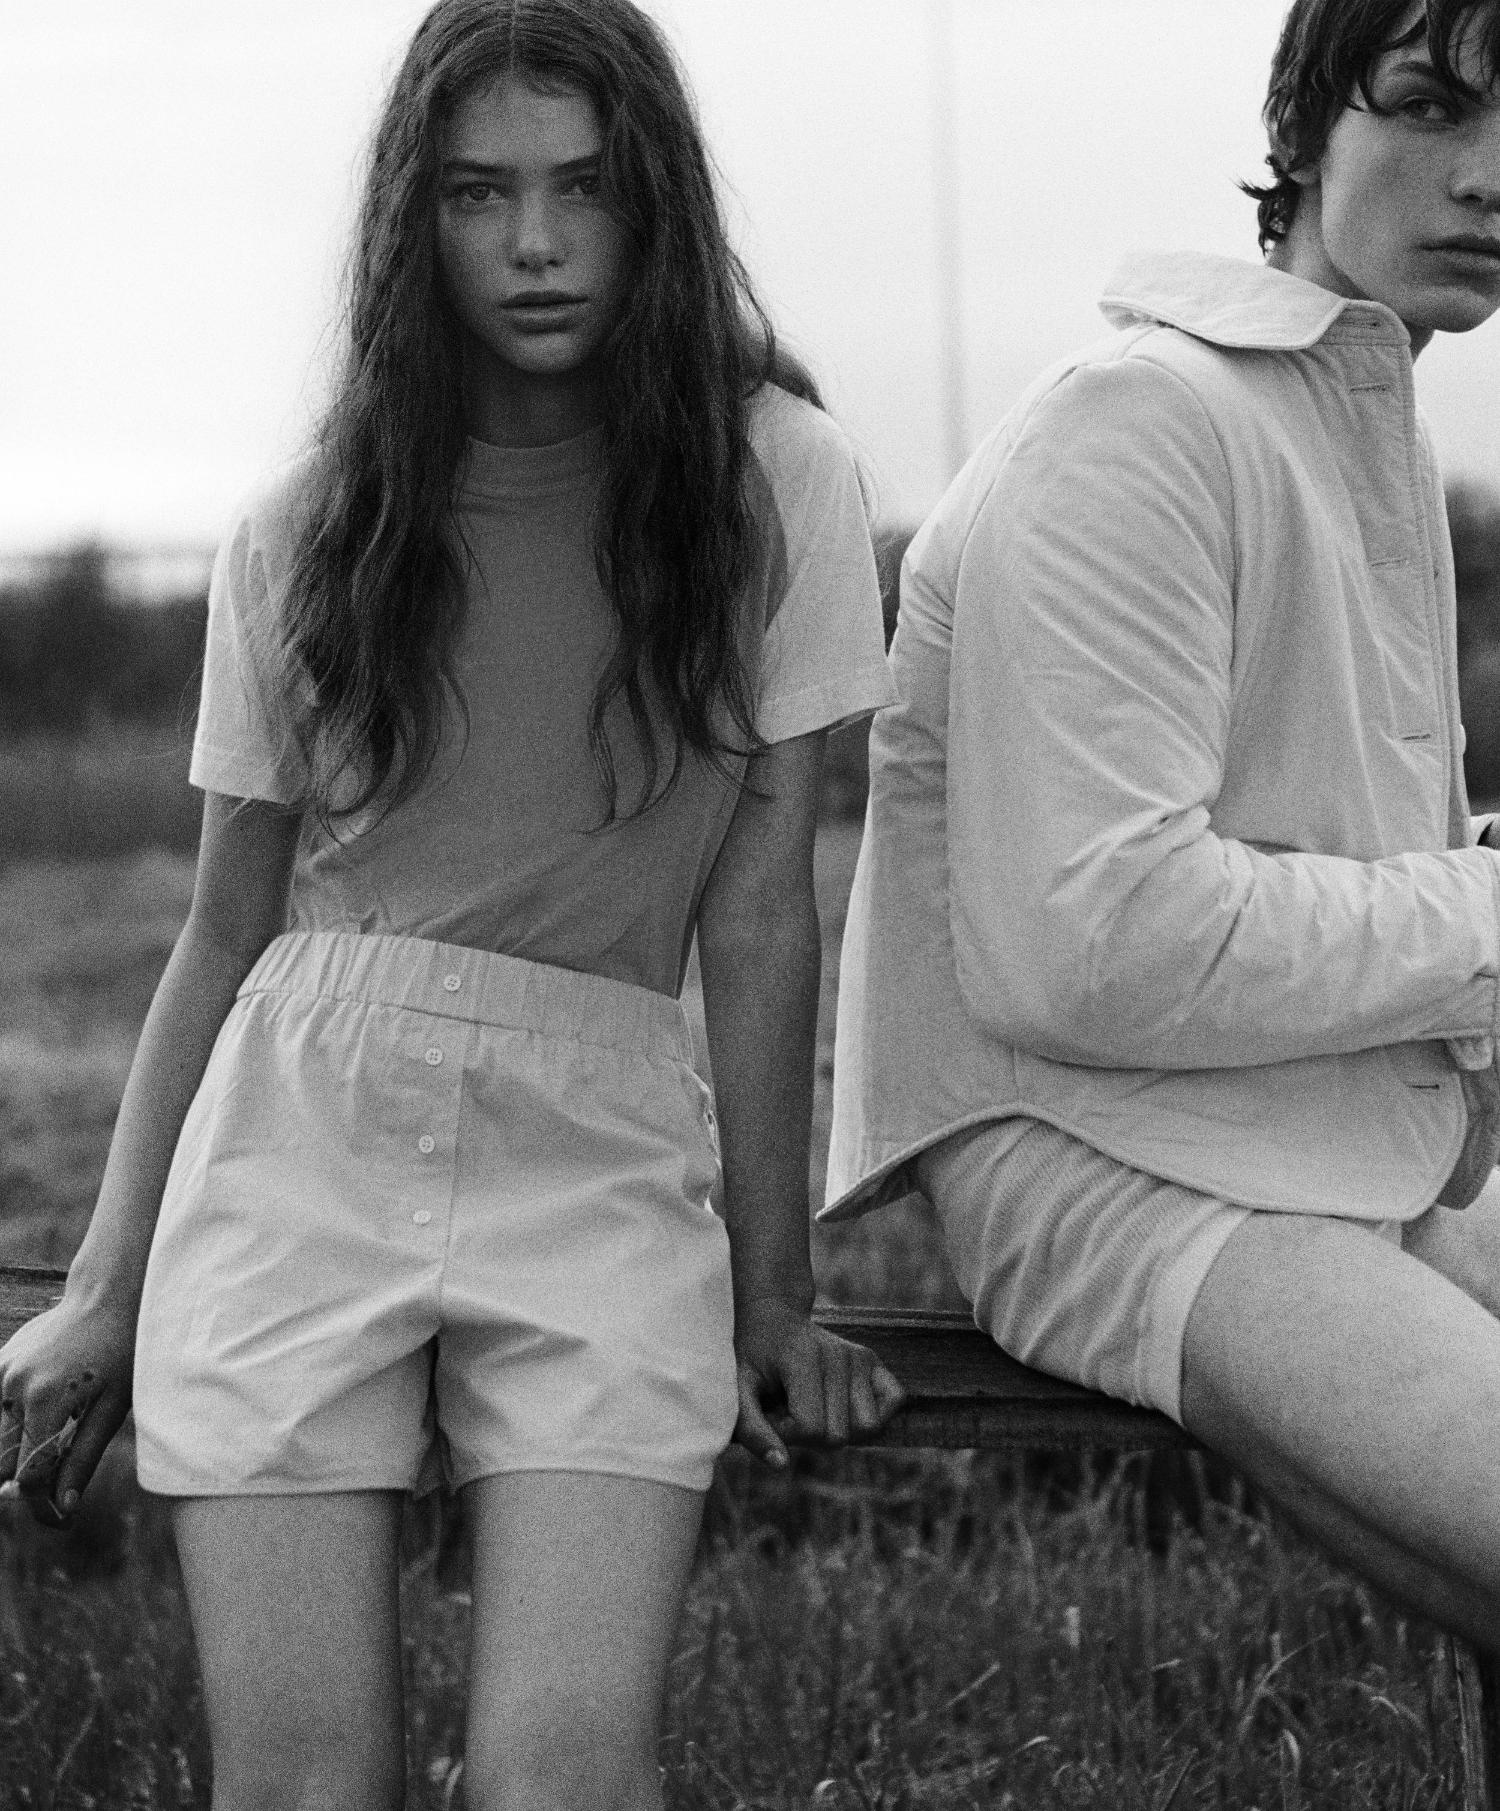 Andrew Barabash & Anna Lenets by Yourko Kalichack for Vogue Ukraine September 2021